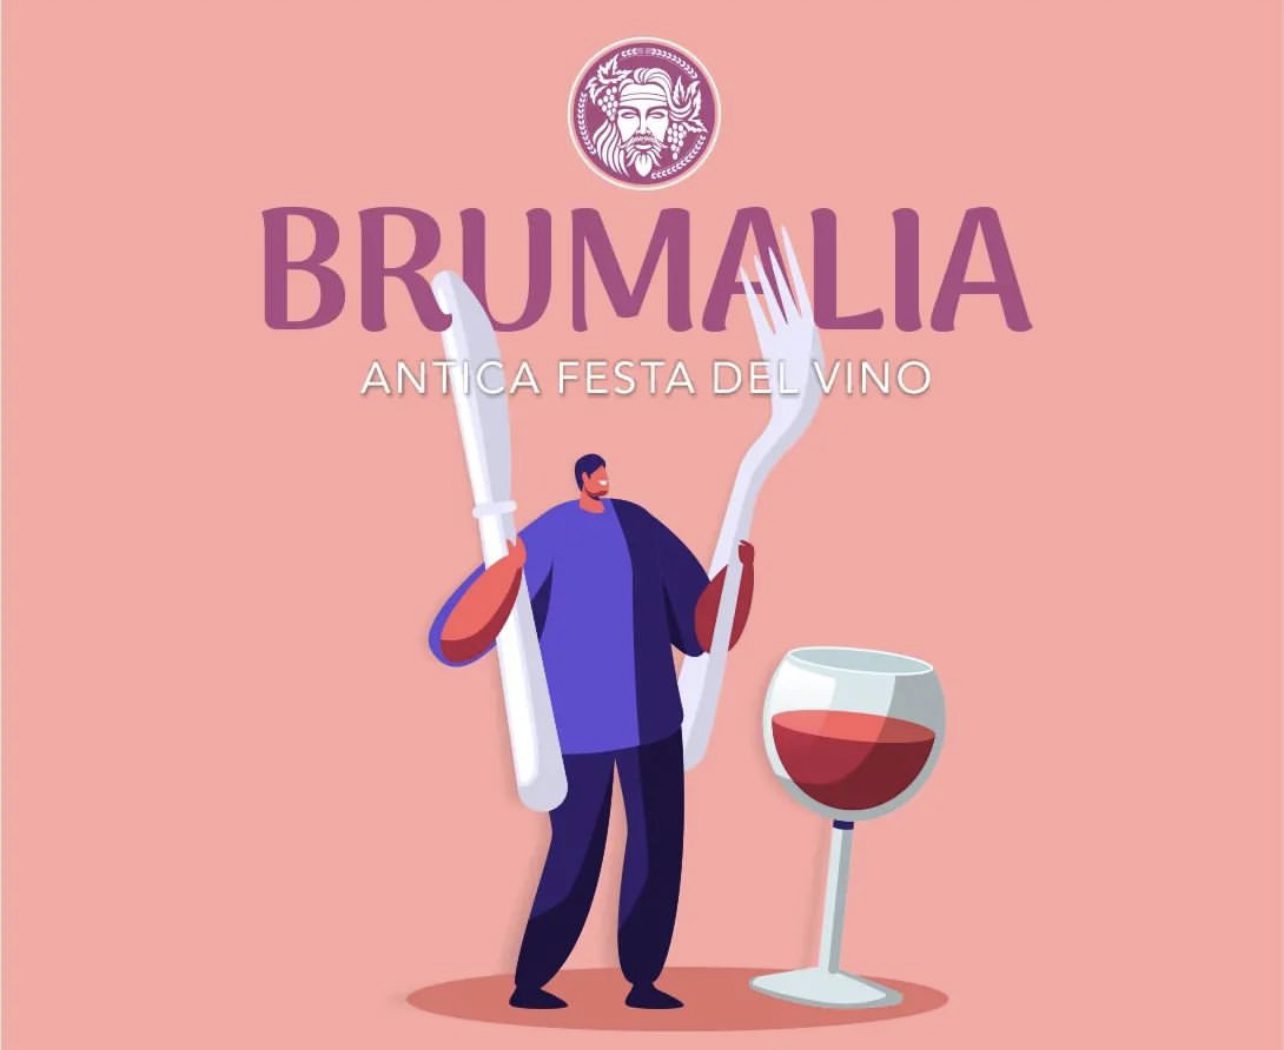 Casal Velino, arriva ‘Brumalia’: antica festa del vino. Il programma completo